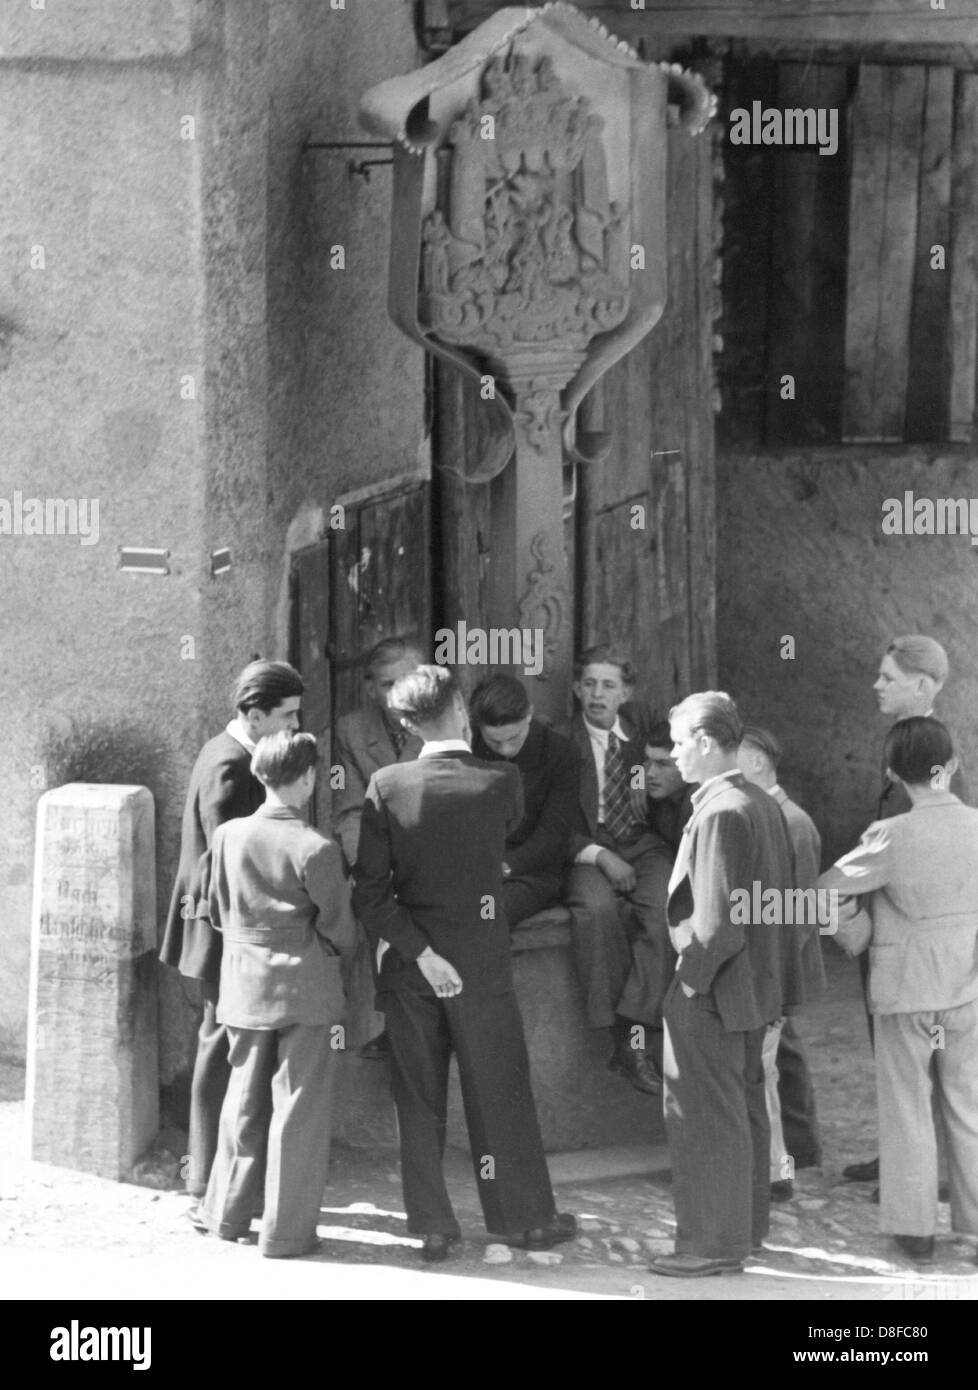 Un gruppo di adolescenti di sesso maschile - indossa una tuta come è comune negli anni sessanta, incontro presso la fontana nella piazza del paese durante il loro tempo libero. Foto Stock